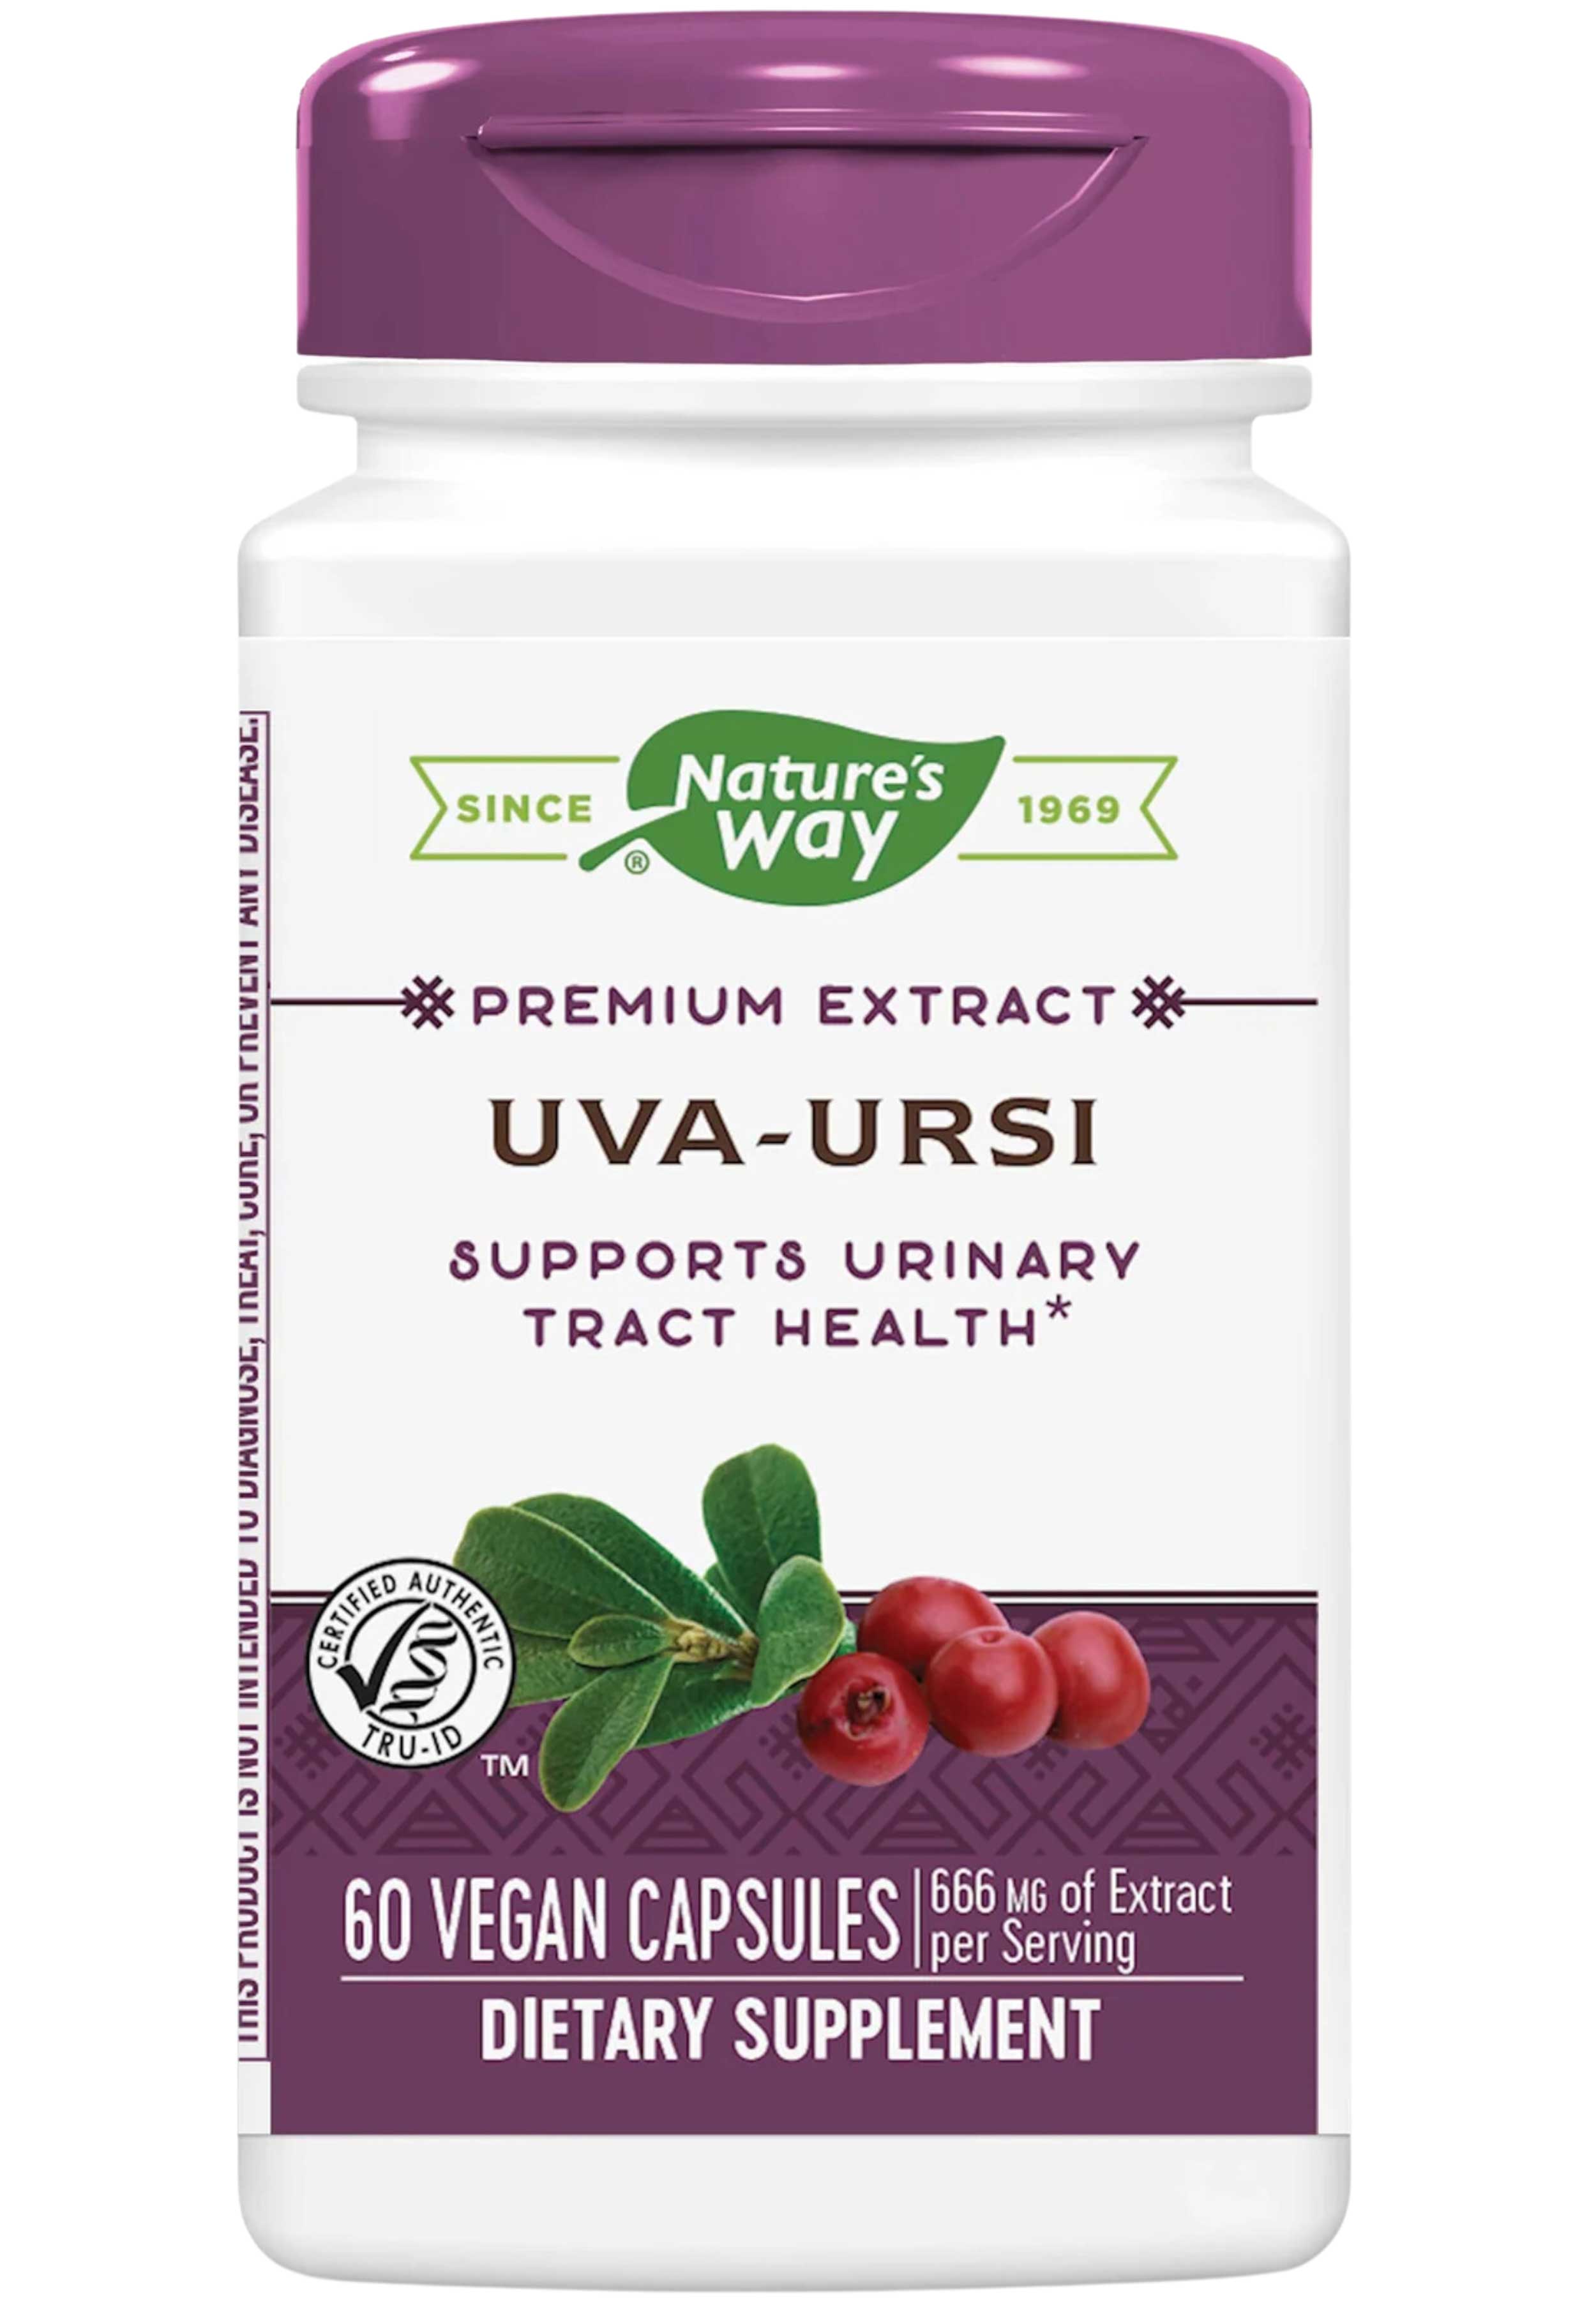 Nature's Way Uva Ursi Premium Extract